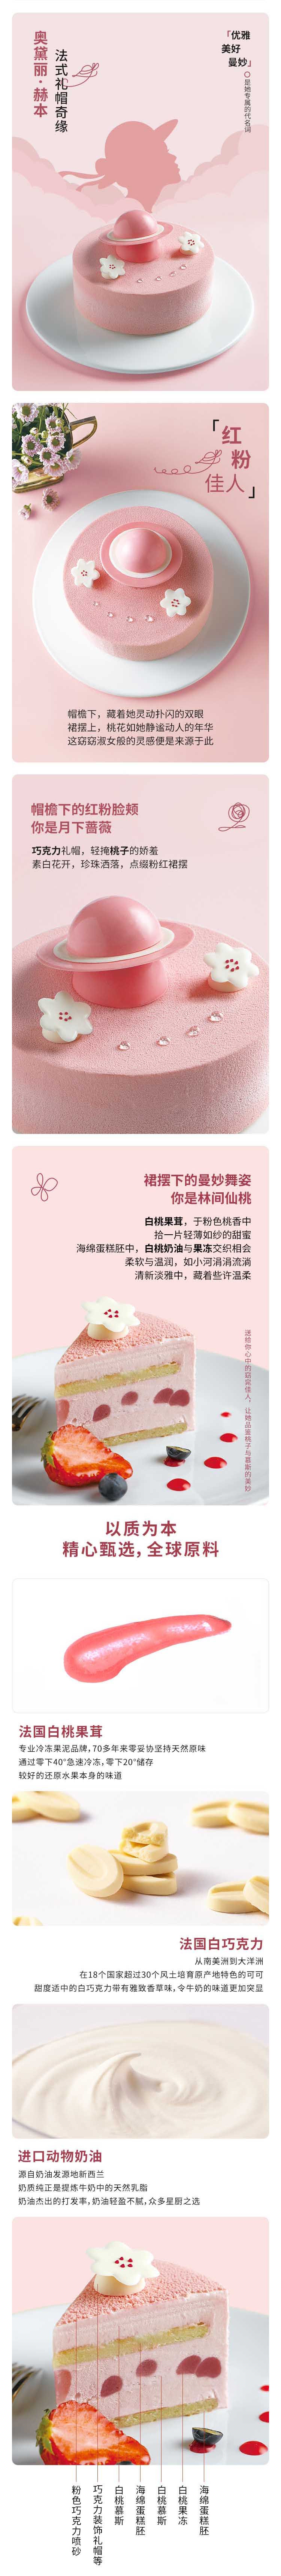 壹点壹客 【深圳馆】粉红佳人-粉色女神小女孩巧克力白桃慕斯奶油生日蛋糕